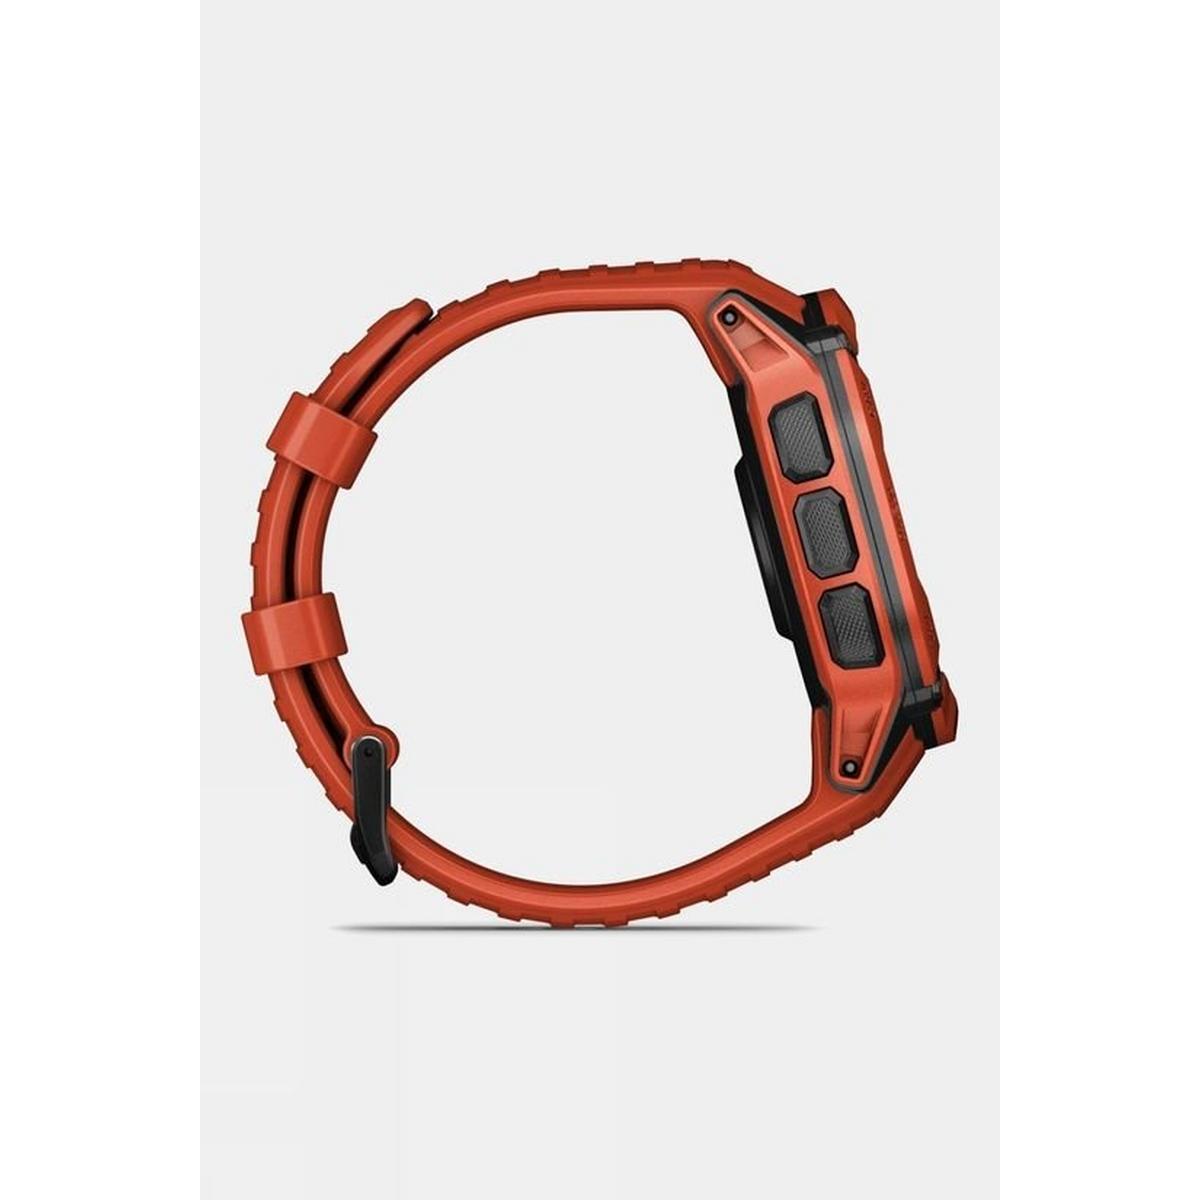 Garmin Instinct® 2X Solar Watch - Red